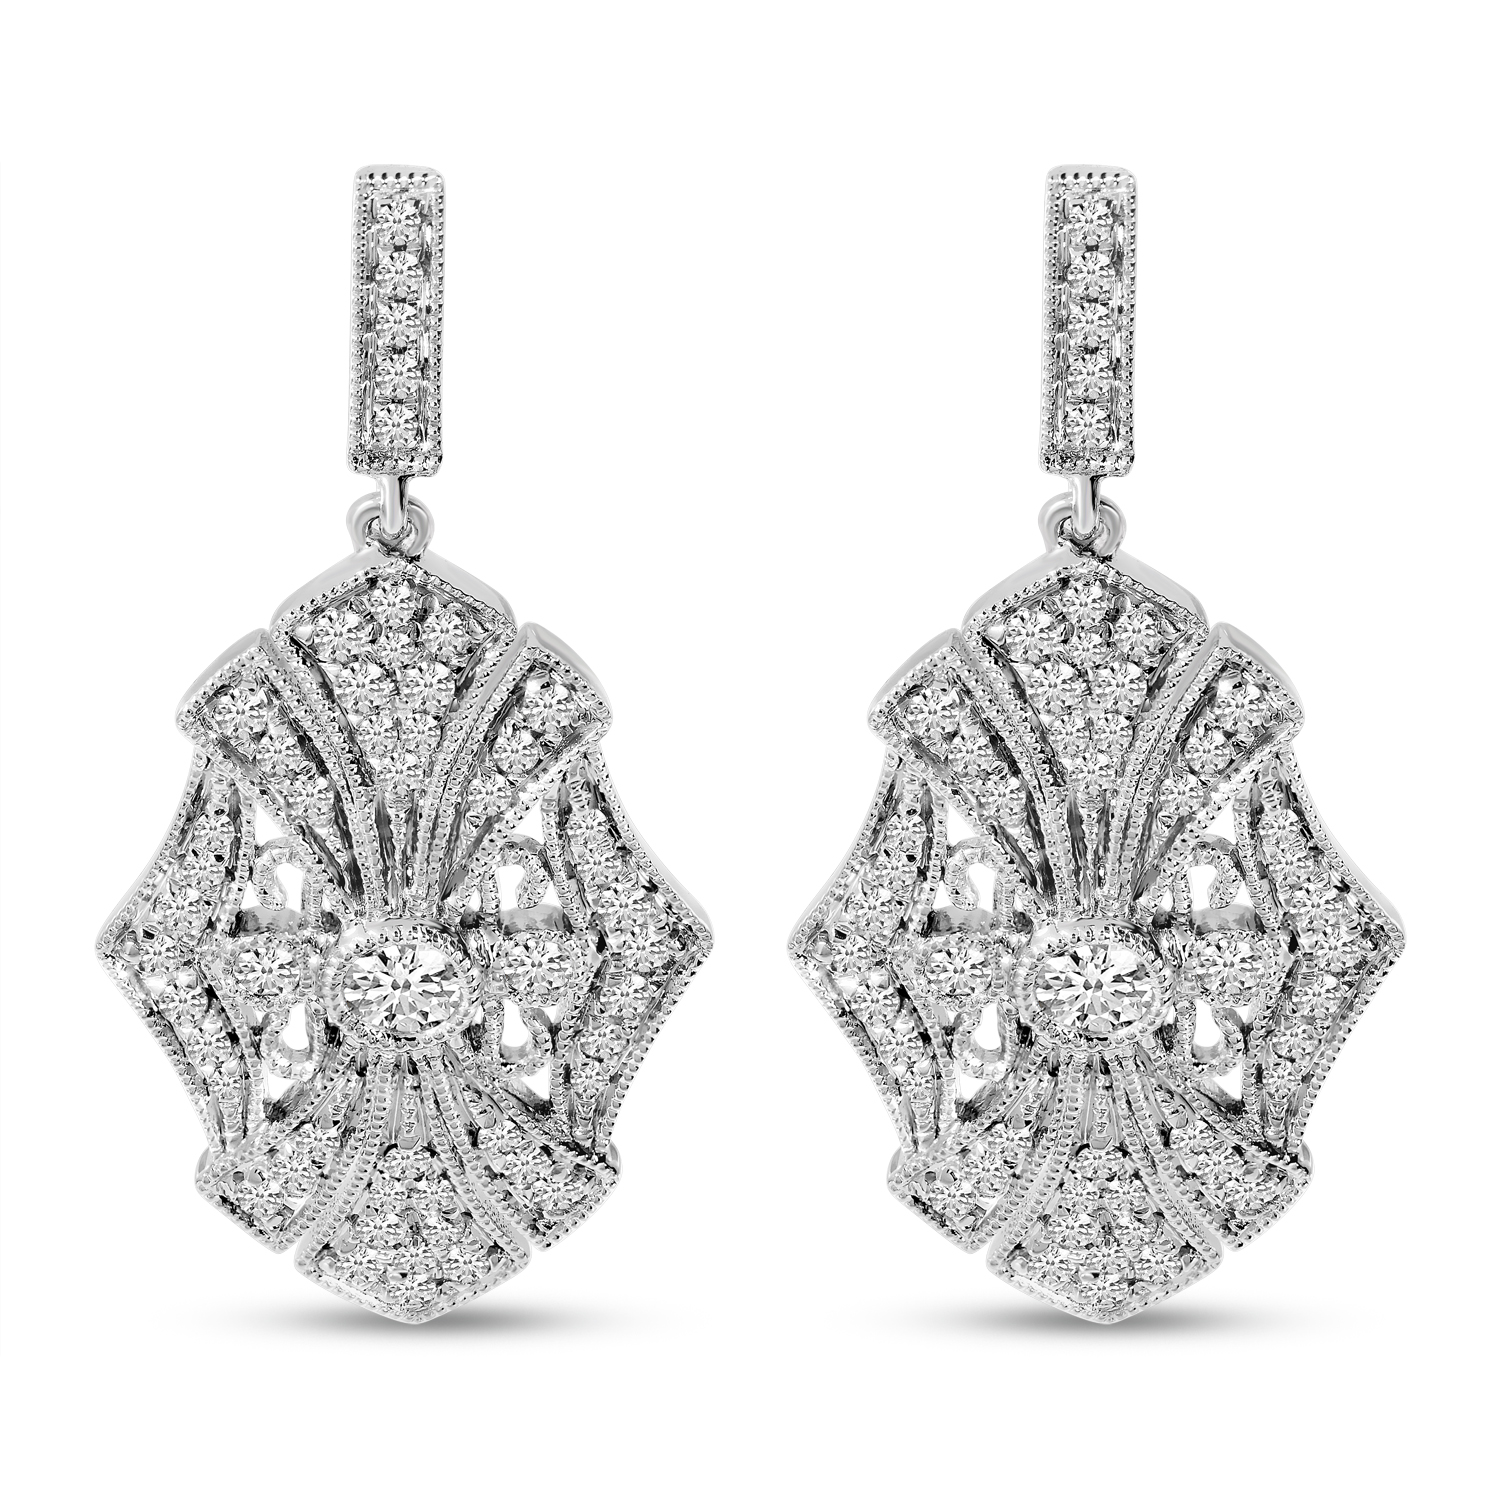 14K White Gold Art Deco Diamond Earrings